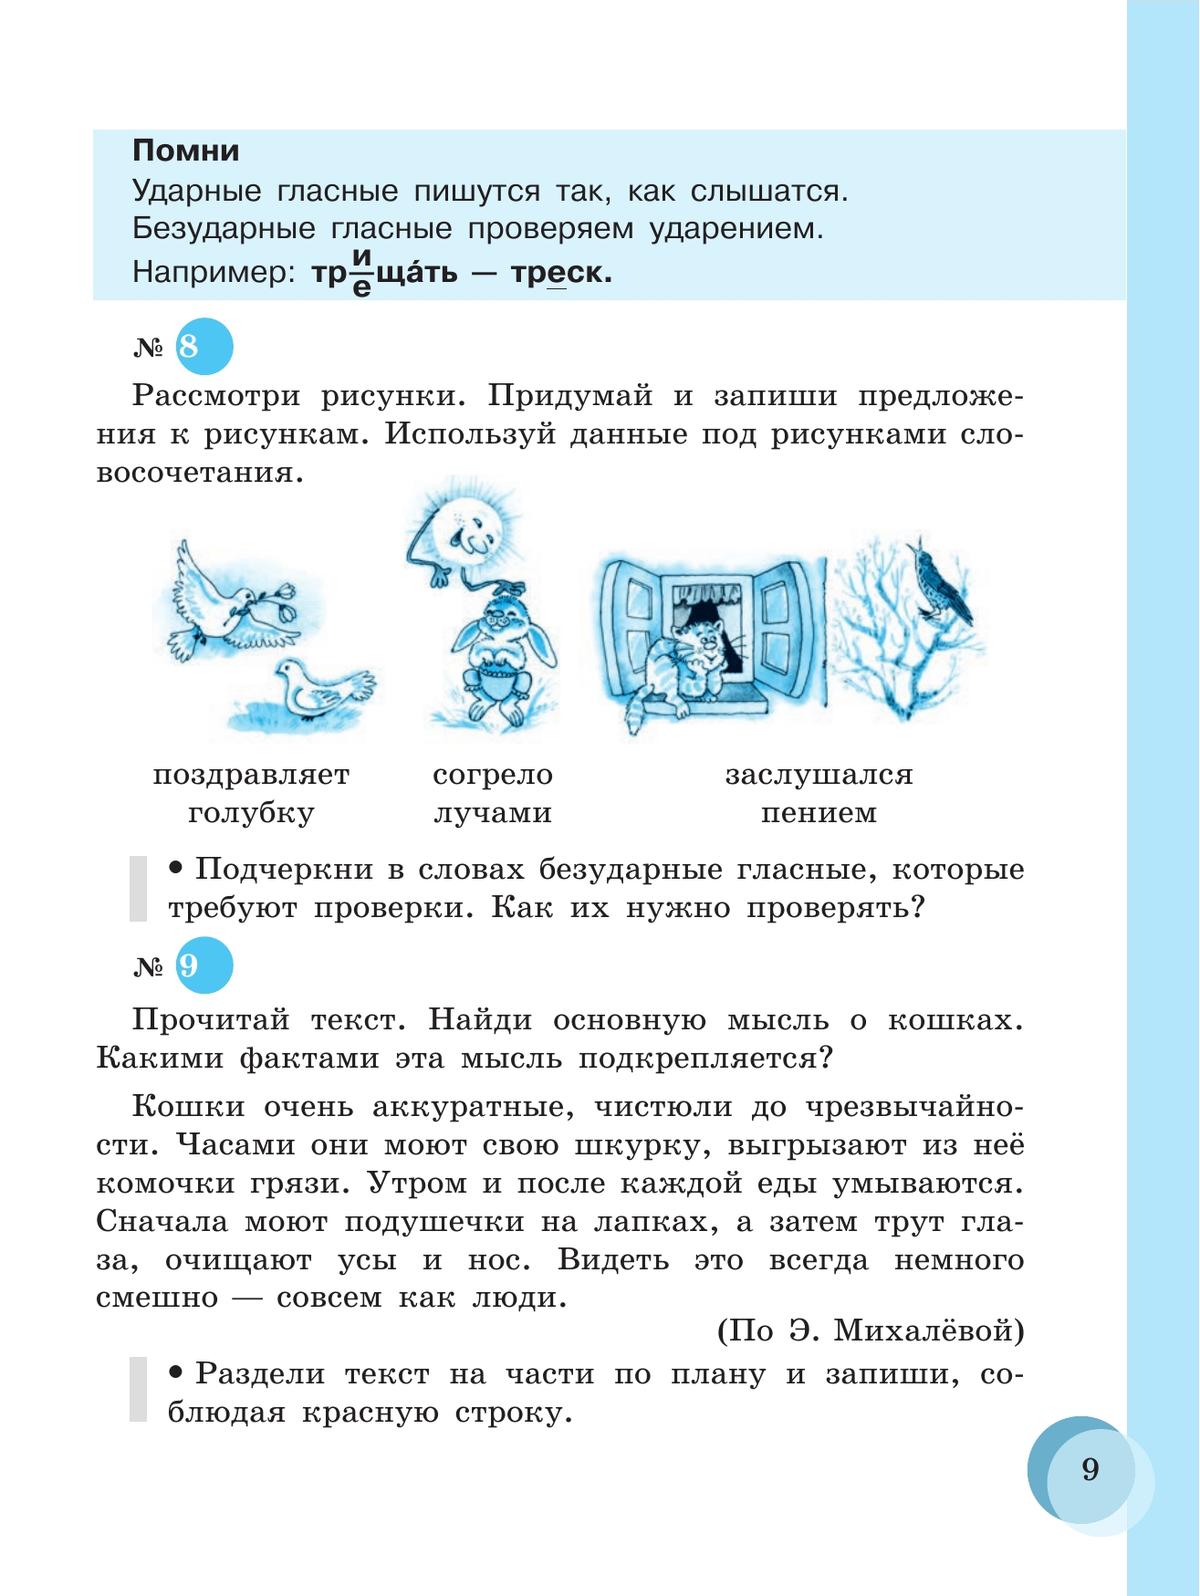 Русский язык. 7 класс. Учебник (для обучающихся с интеллектуальными нарушениями) 7